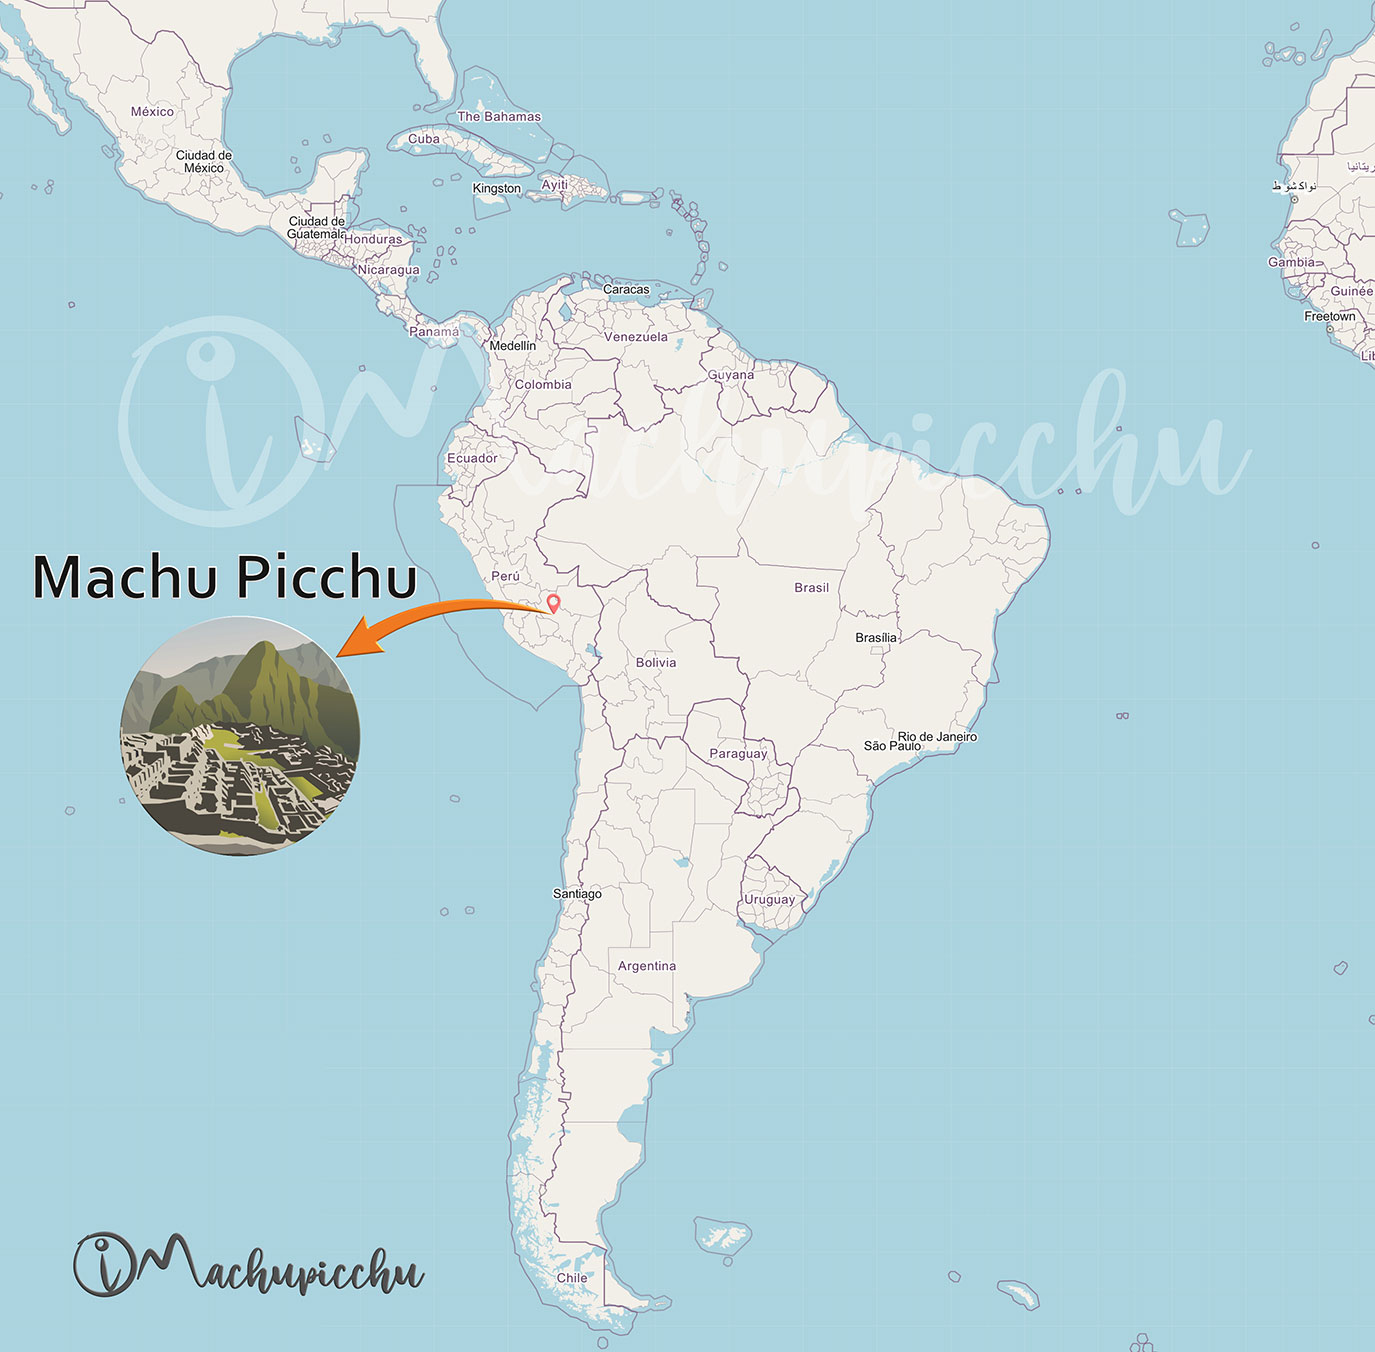 Machu Picchu location in South America